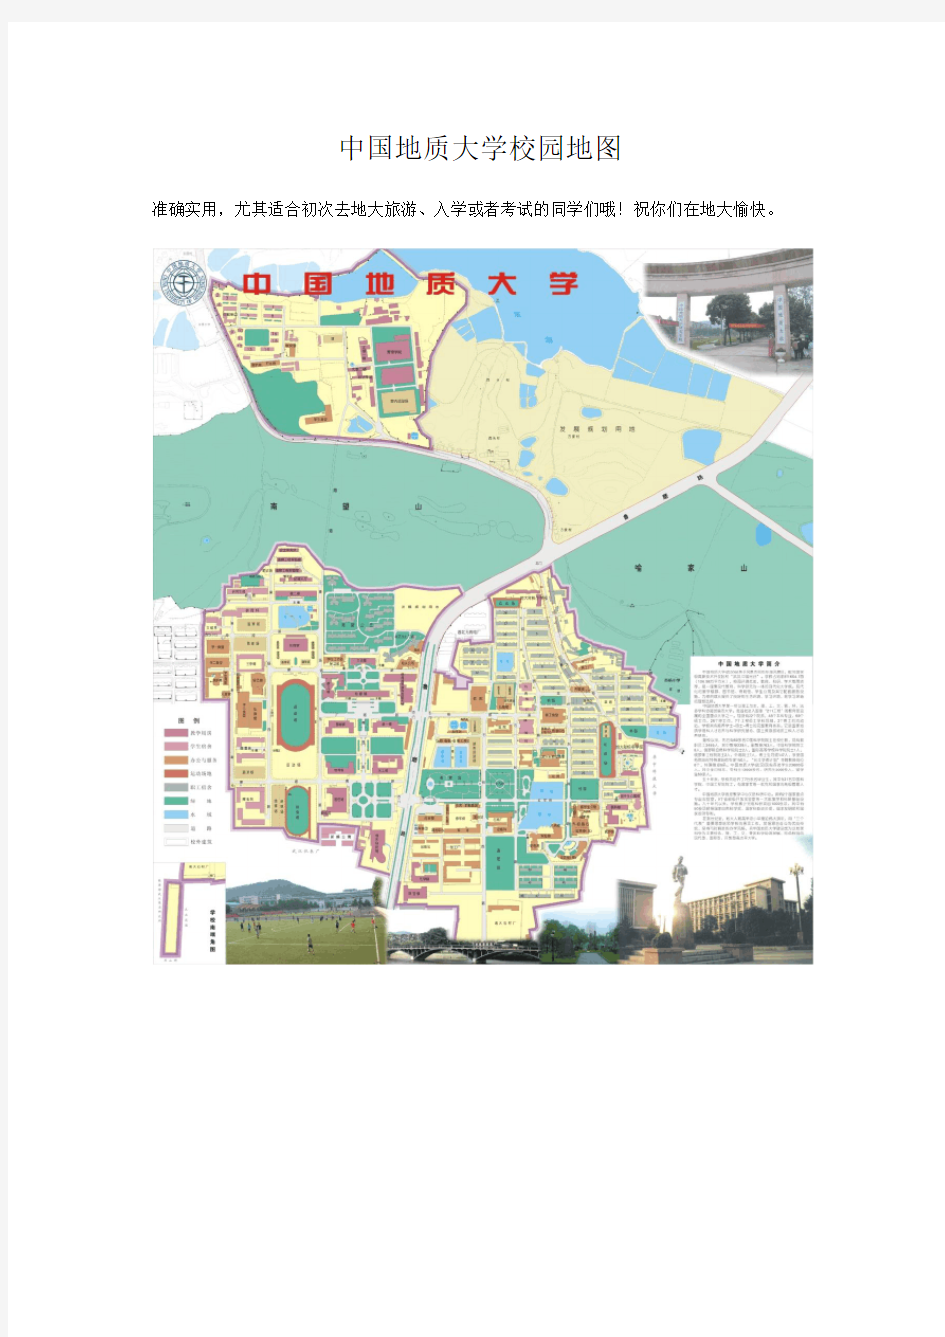 中国地质大学武汉校园电子地图